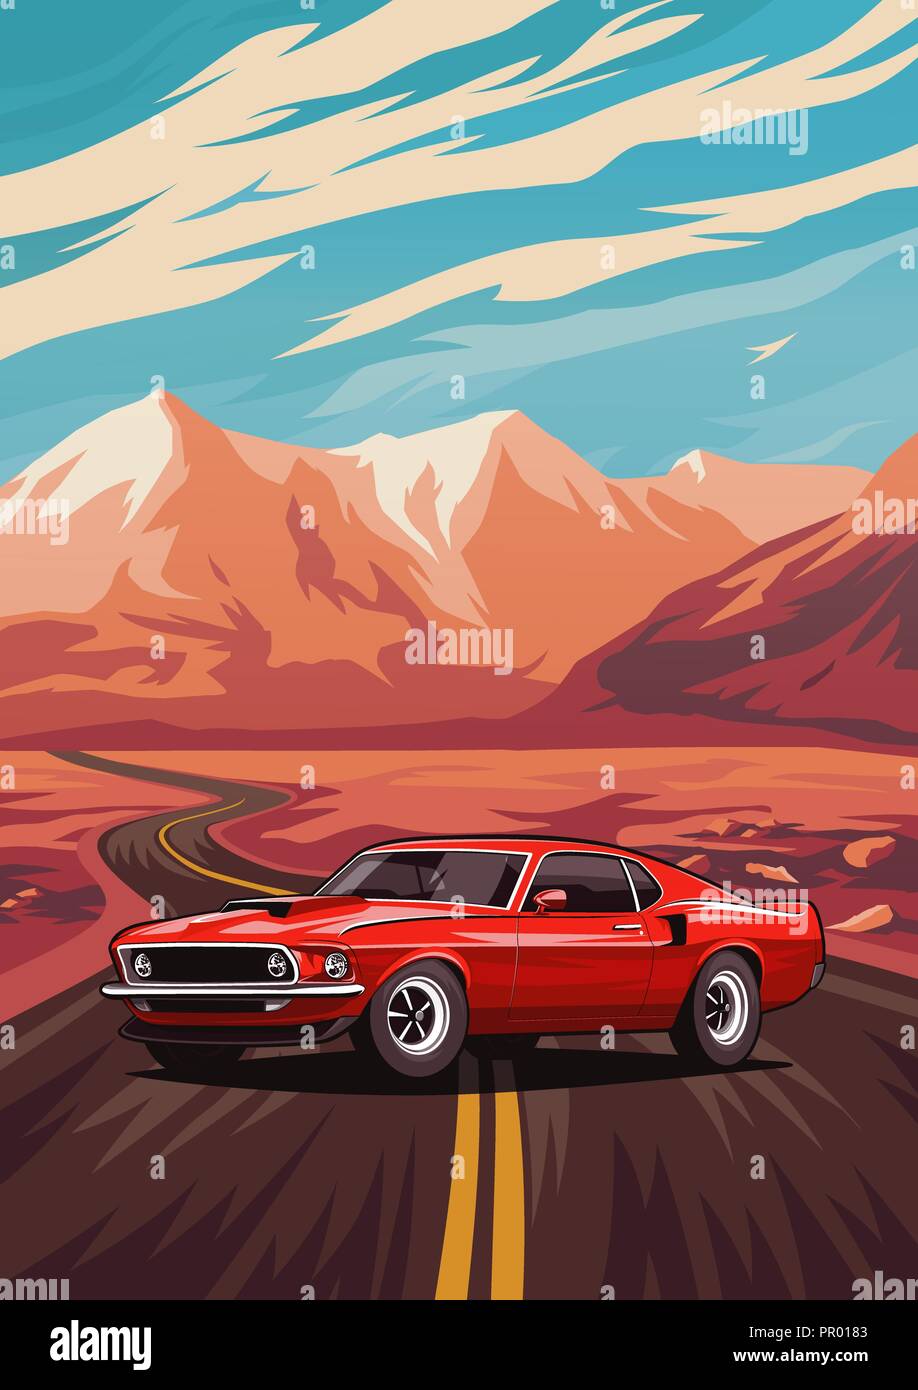 Retro american muscle car de l'affiche. Illustration avec location de standing sur route près de montagnes. Illustration de Vecteur